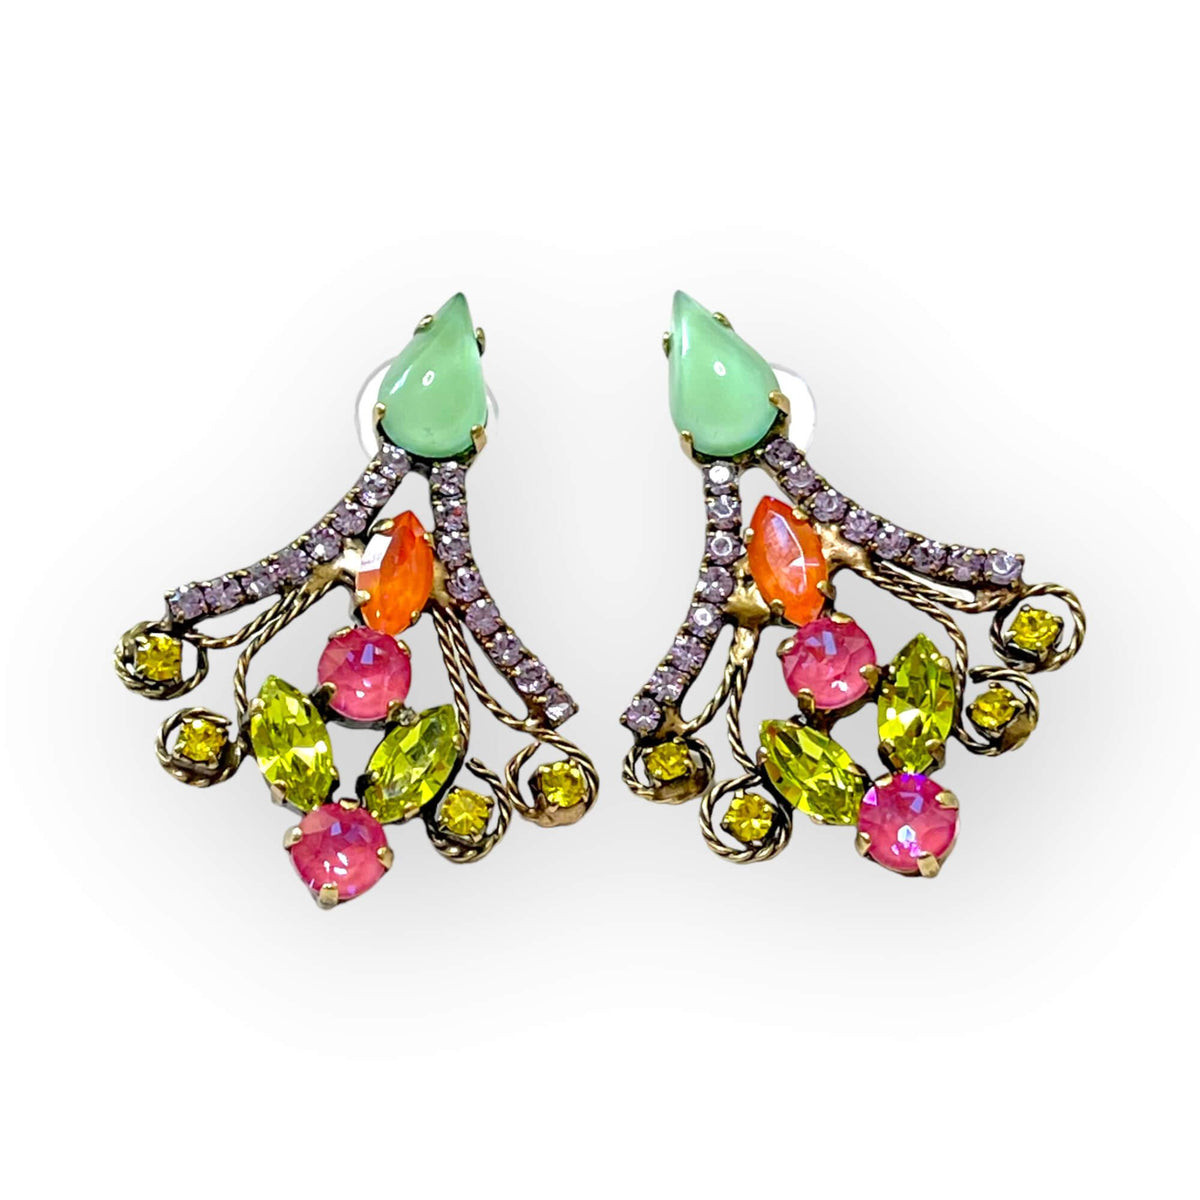 Elegant Drop Earrings in Multicolor Crystals - Vita Isola